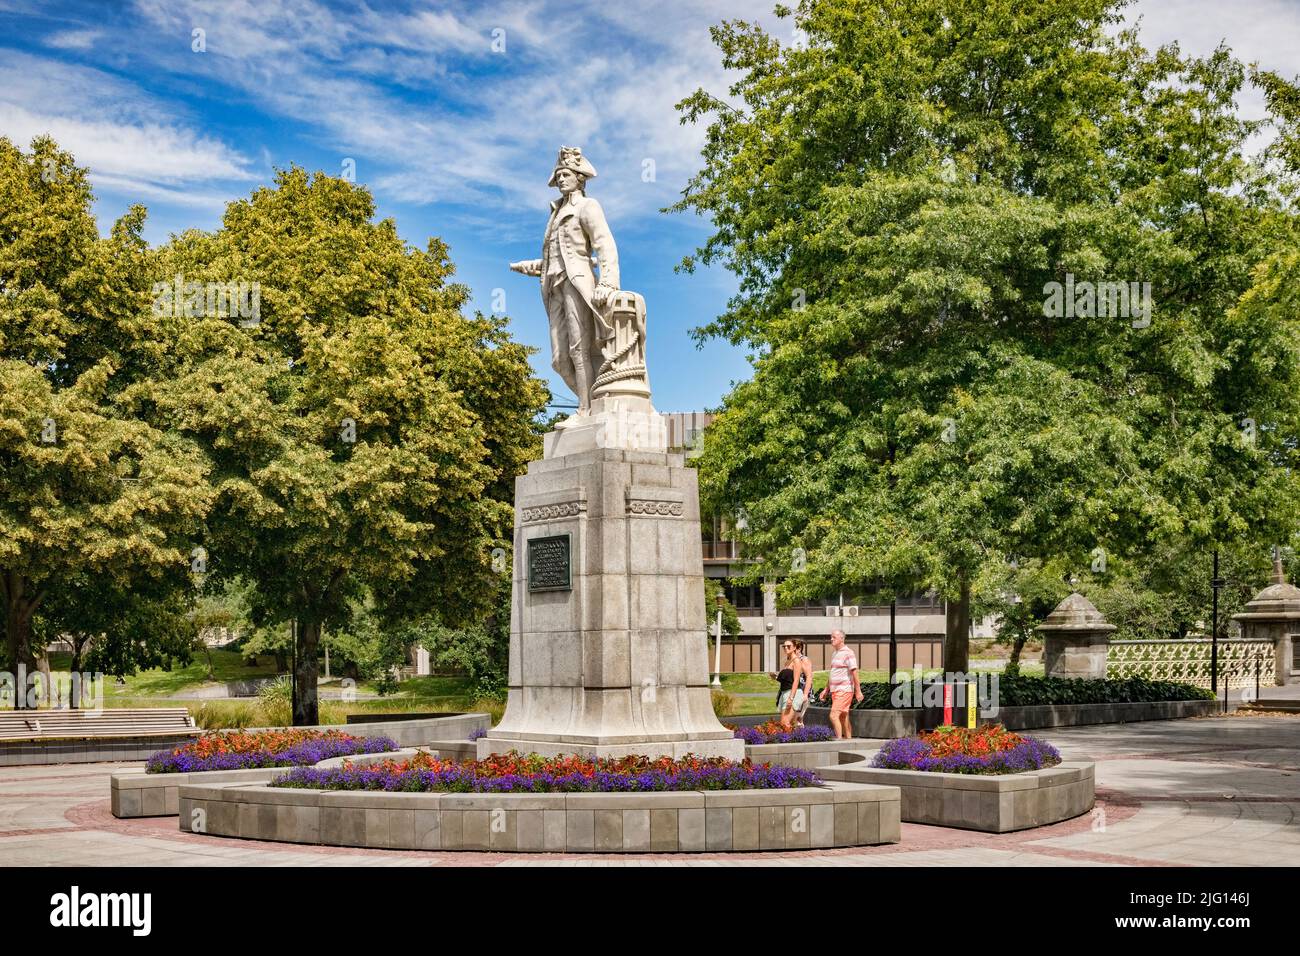 3 janvier 2019 : Christchurch, Nouvelle-Zélande - Victoria Square en été, avec des arbres en pleine feuille, et la statue du capitaine James Cook. Banque D'Images